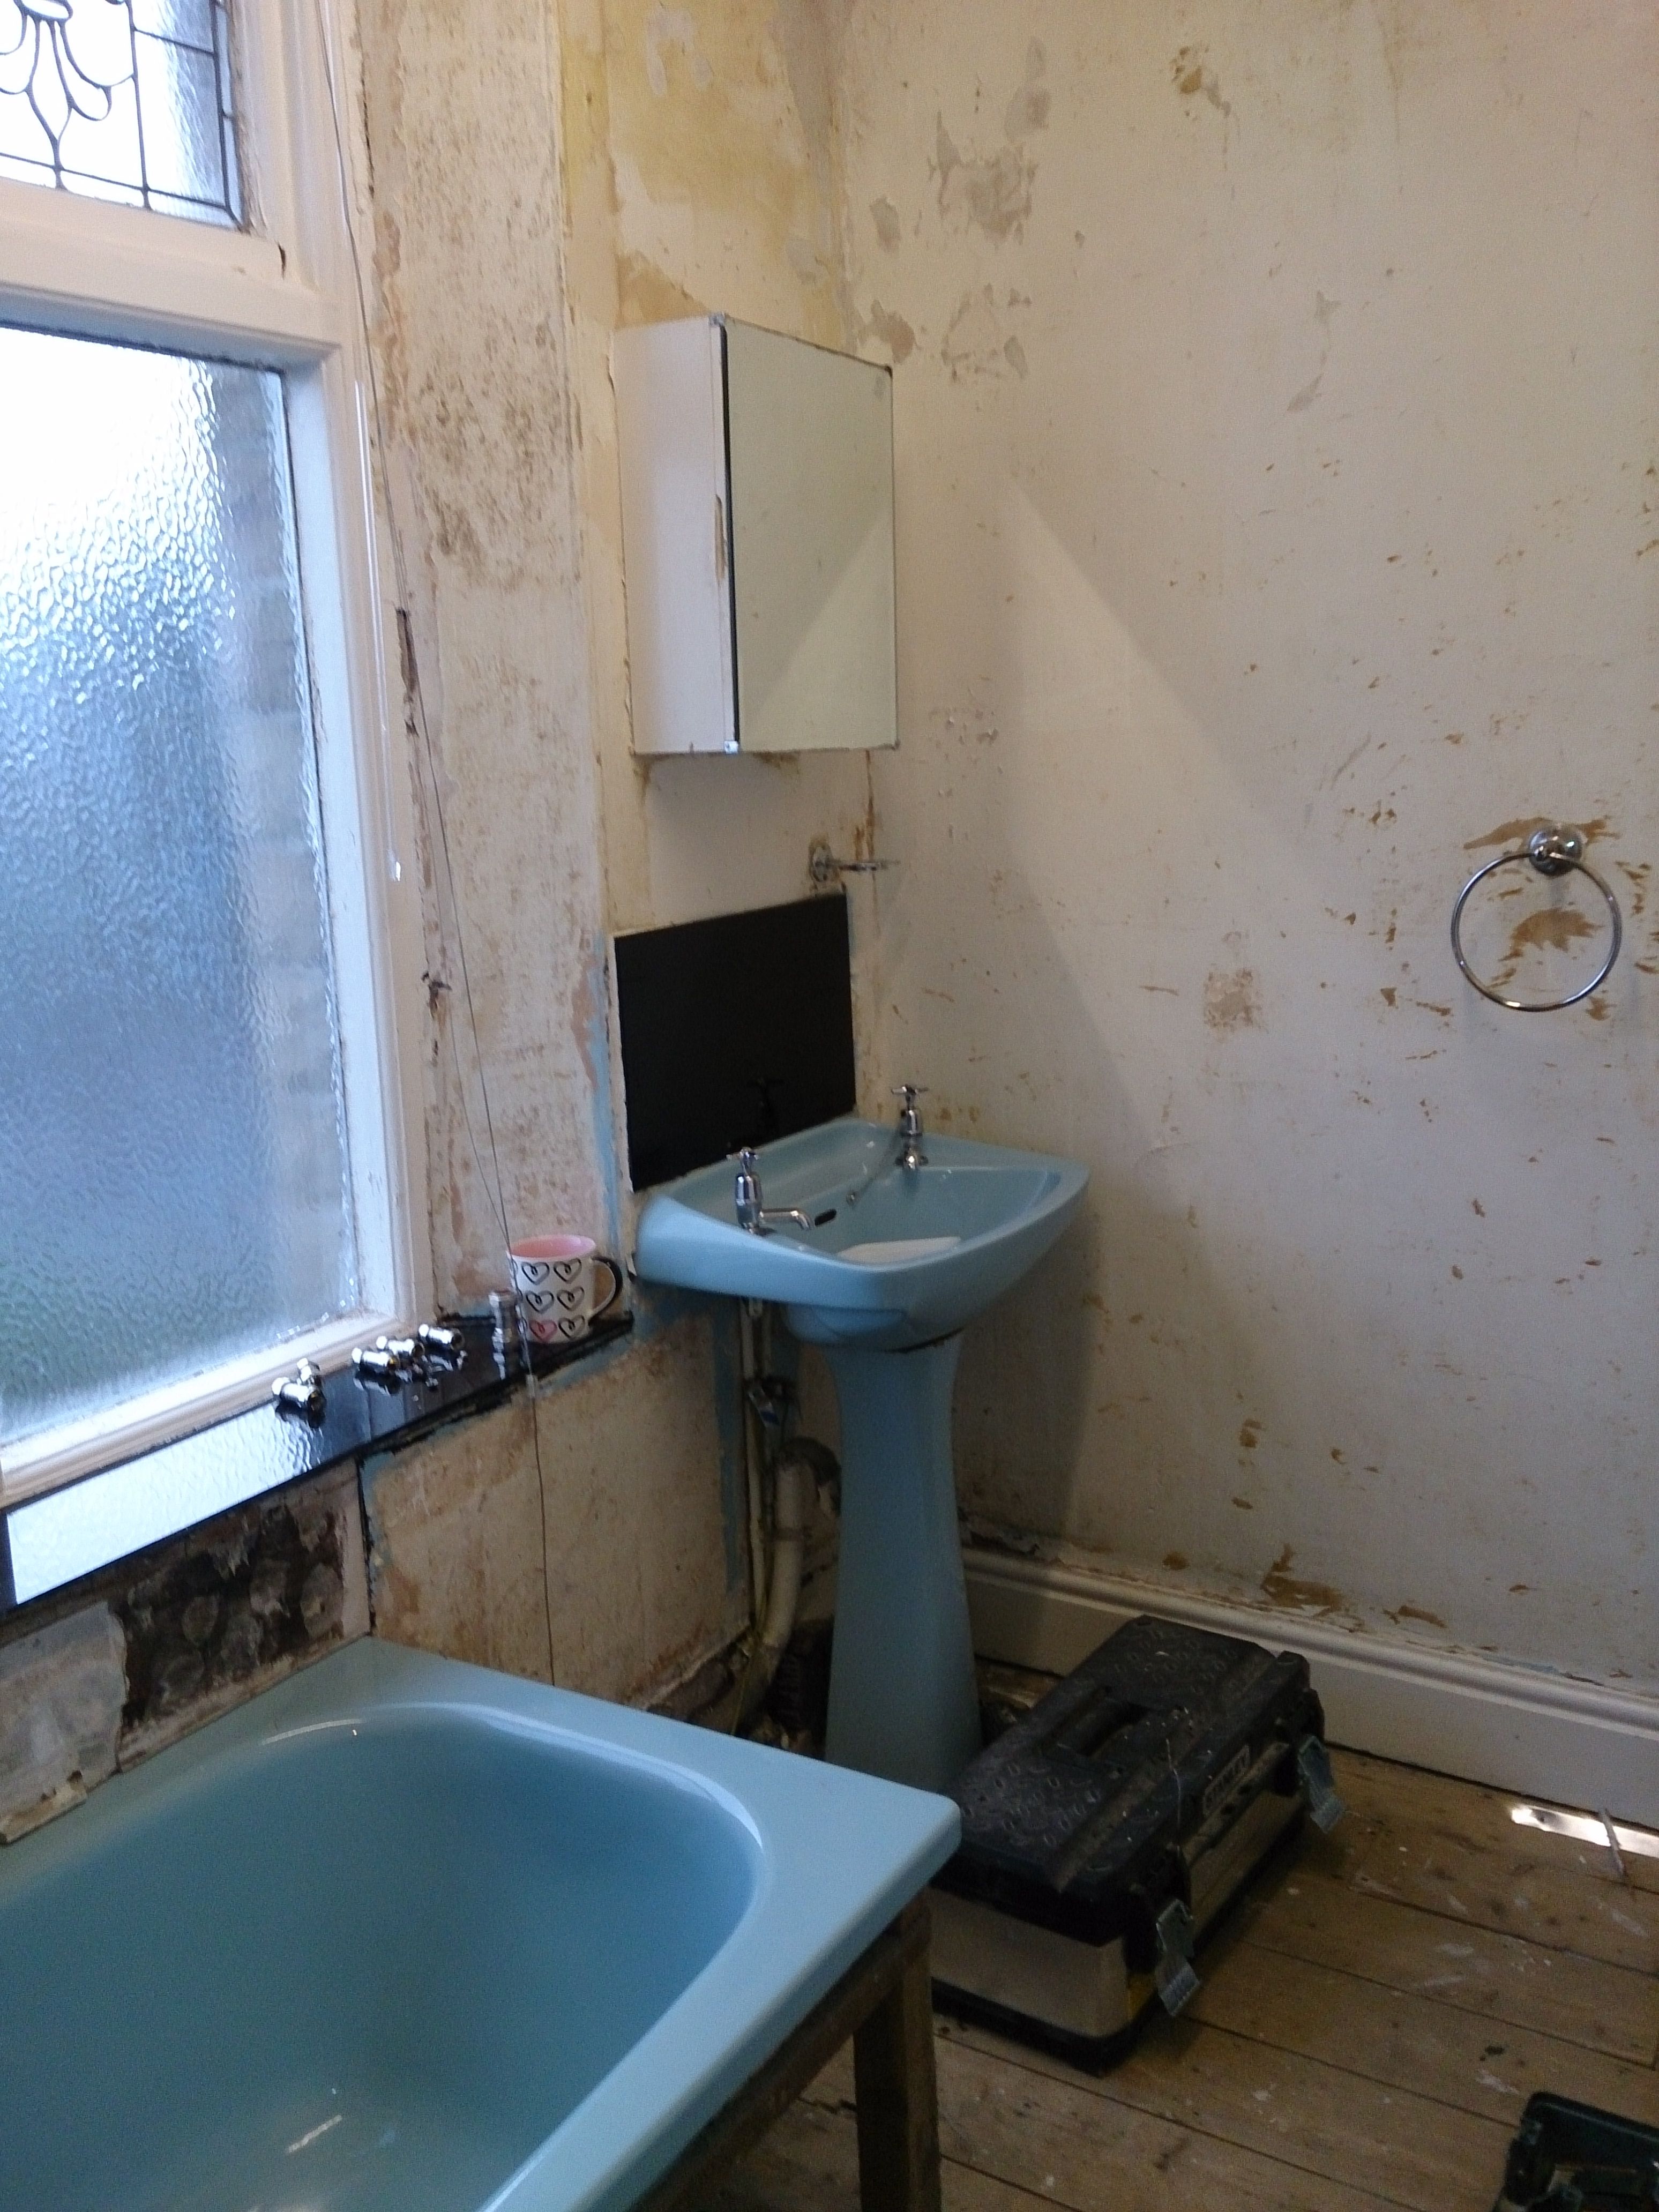 Small bathroom refurbishment (before)